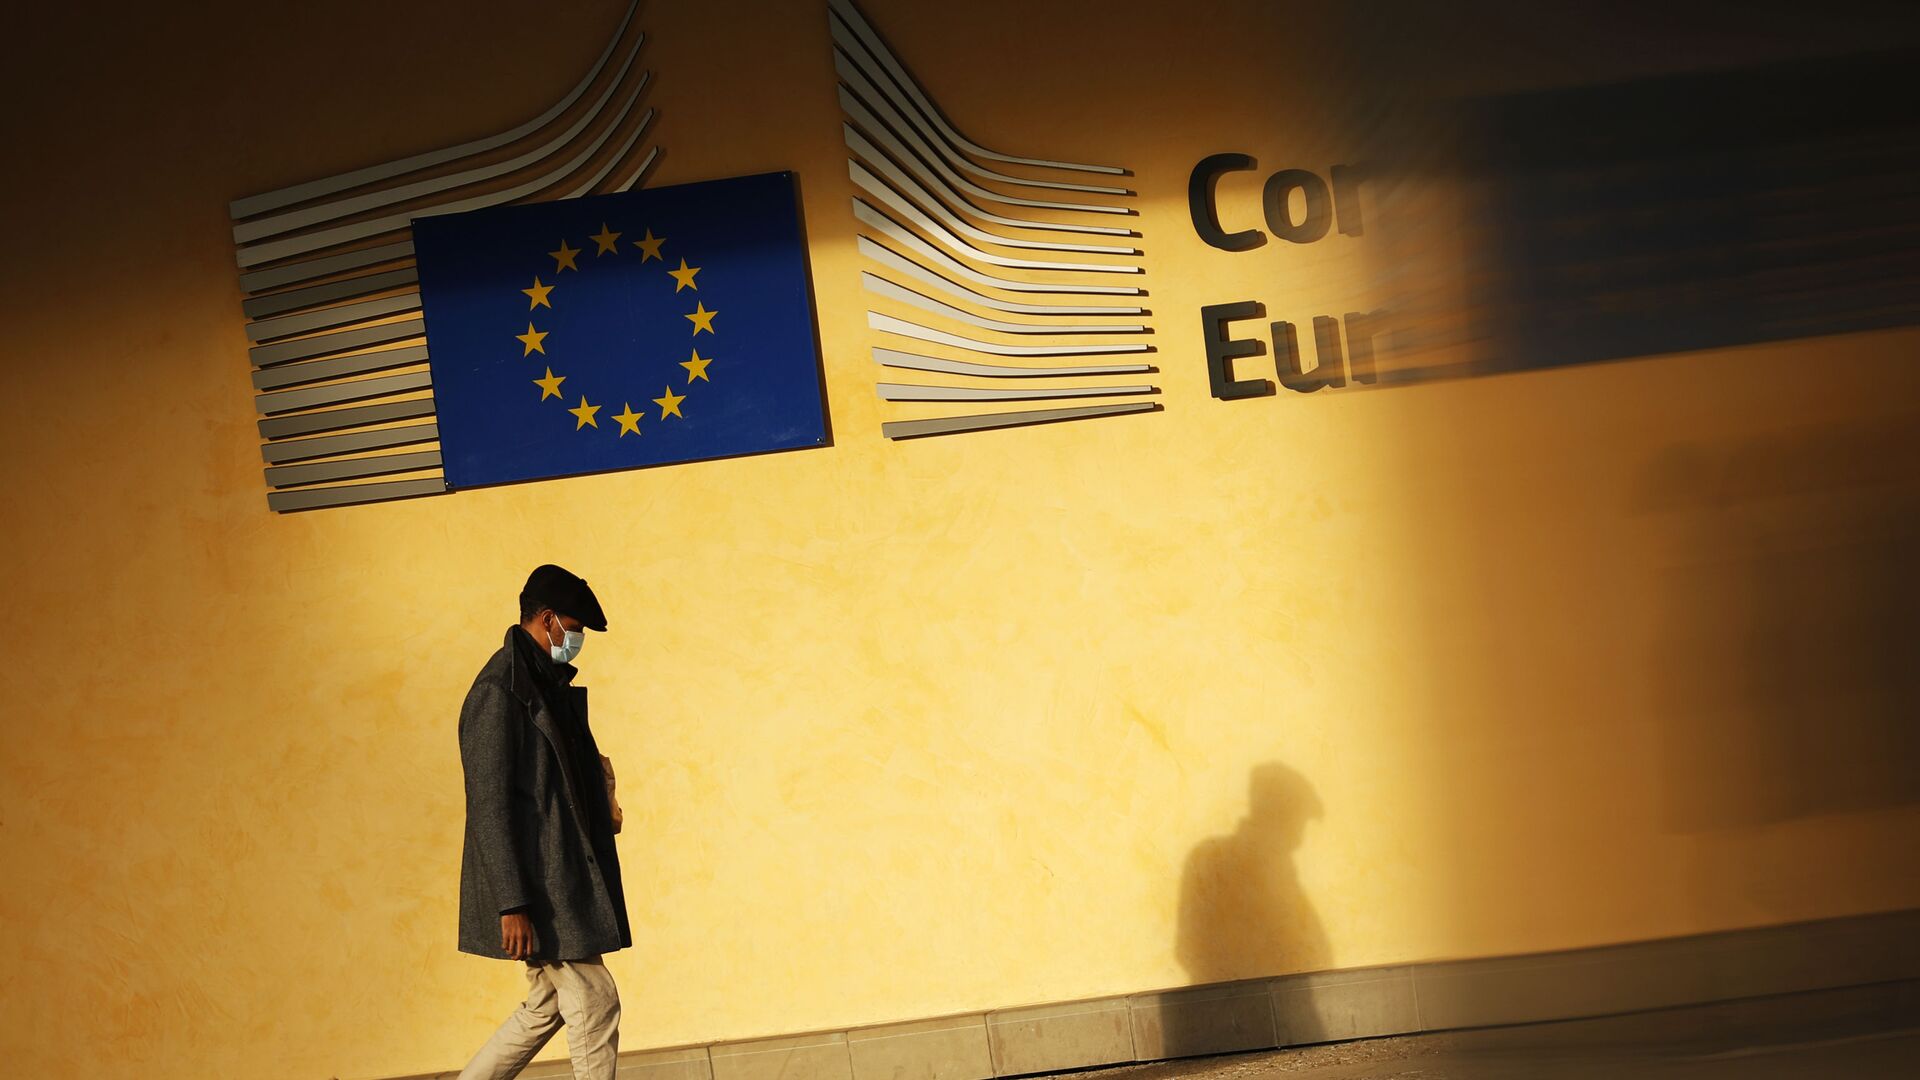 Тень человека падает на фасад штаб-квартиры ЕС в Брюсселе - Sputnik Молдова, 1920, 01.05.2021